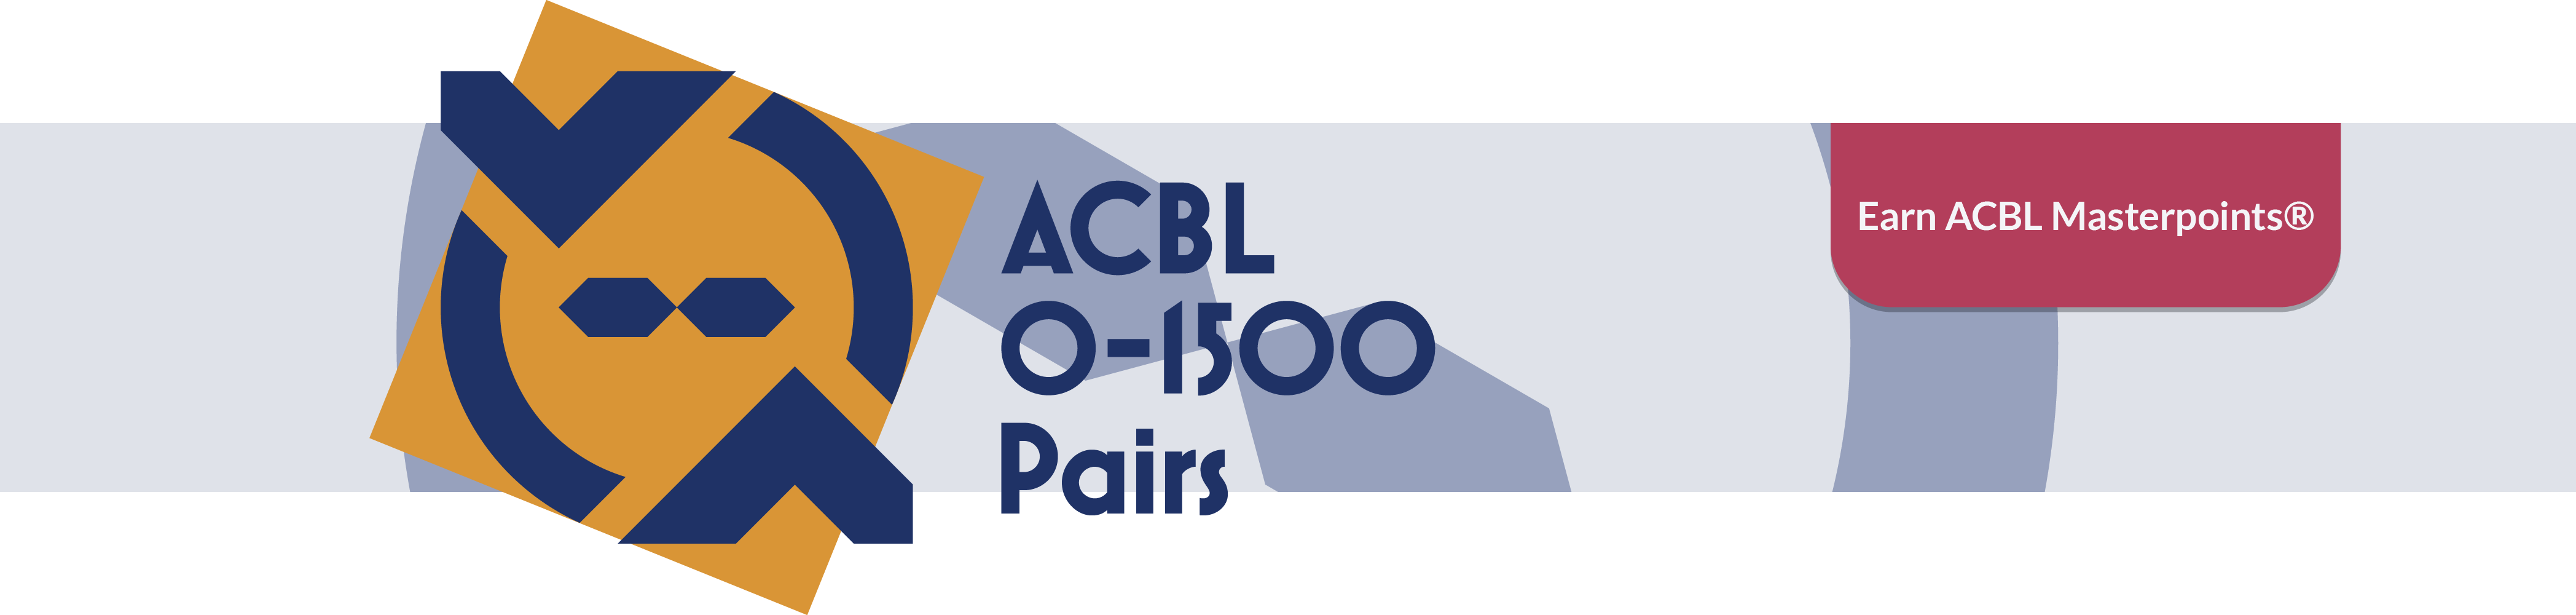 ACBL 01500 Pairs BBO News